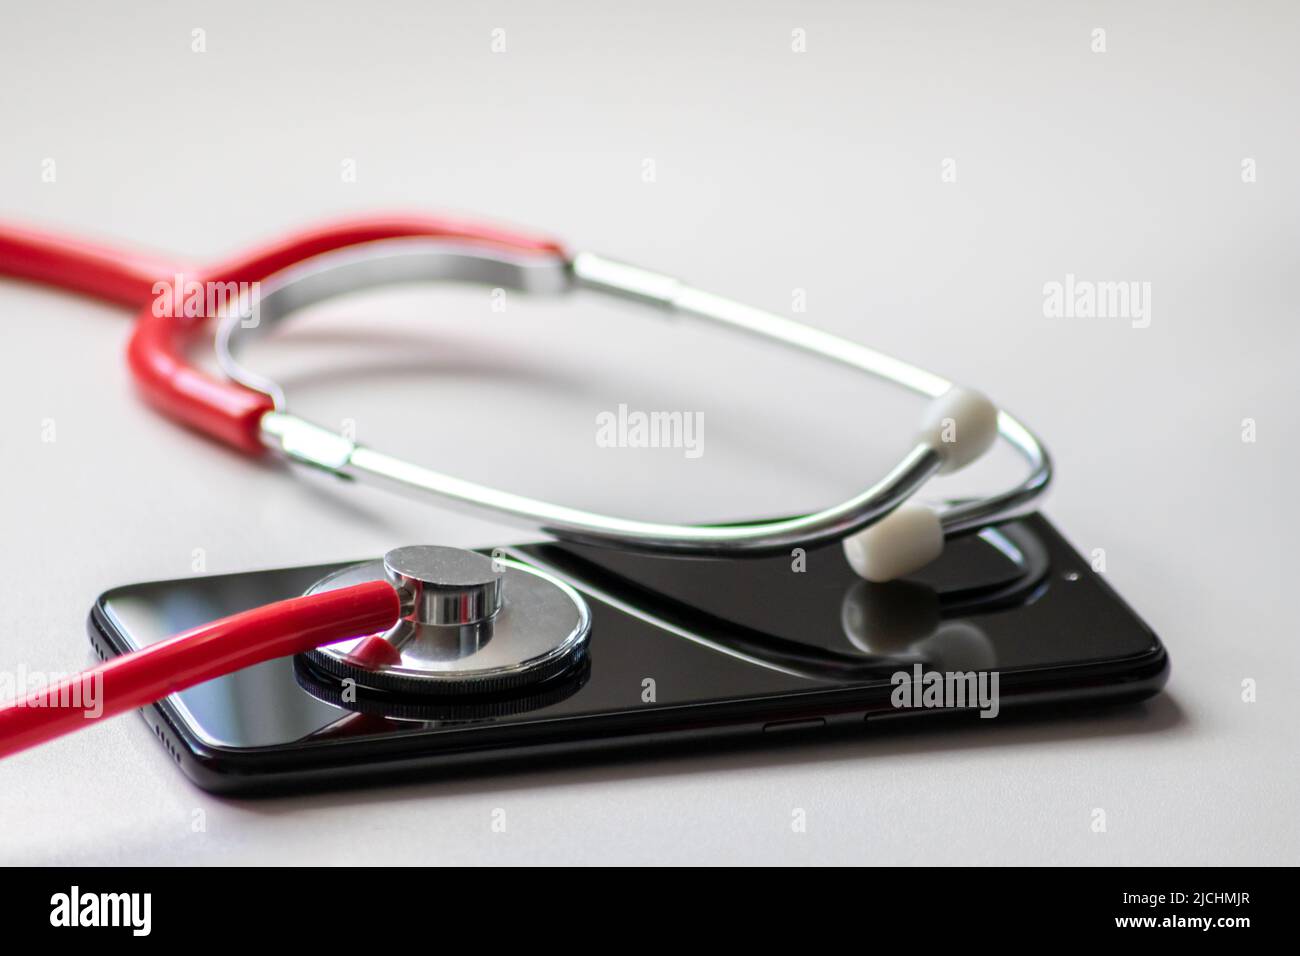 Das rote Stethoskop auf dem schwarzen Smartphone stellt Gesundheitsakten und digitale Patientenakten mit mobilen Geräten für die digitale Diagnose von Ärzten dar Stockfoto